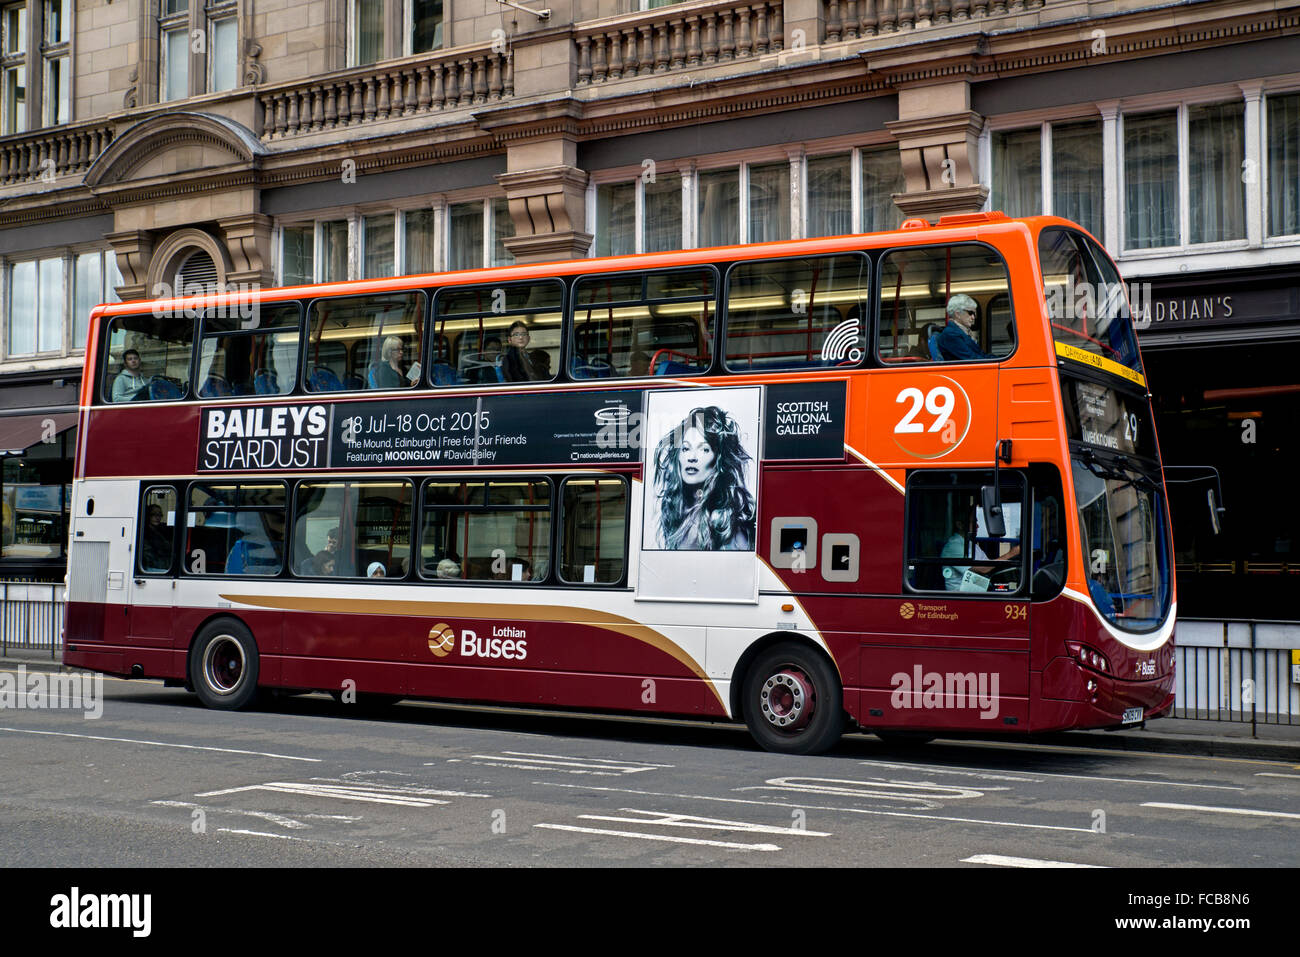 Dans une publicité pour David Bailey's Stardust exposition sur le côté d'un bus d'Edimbourg. Banque D'Images